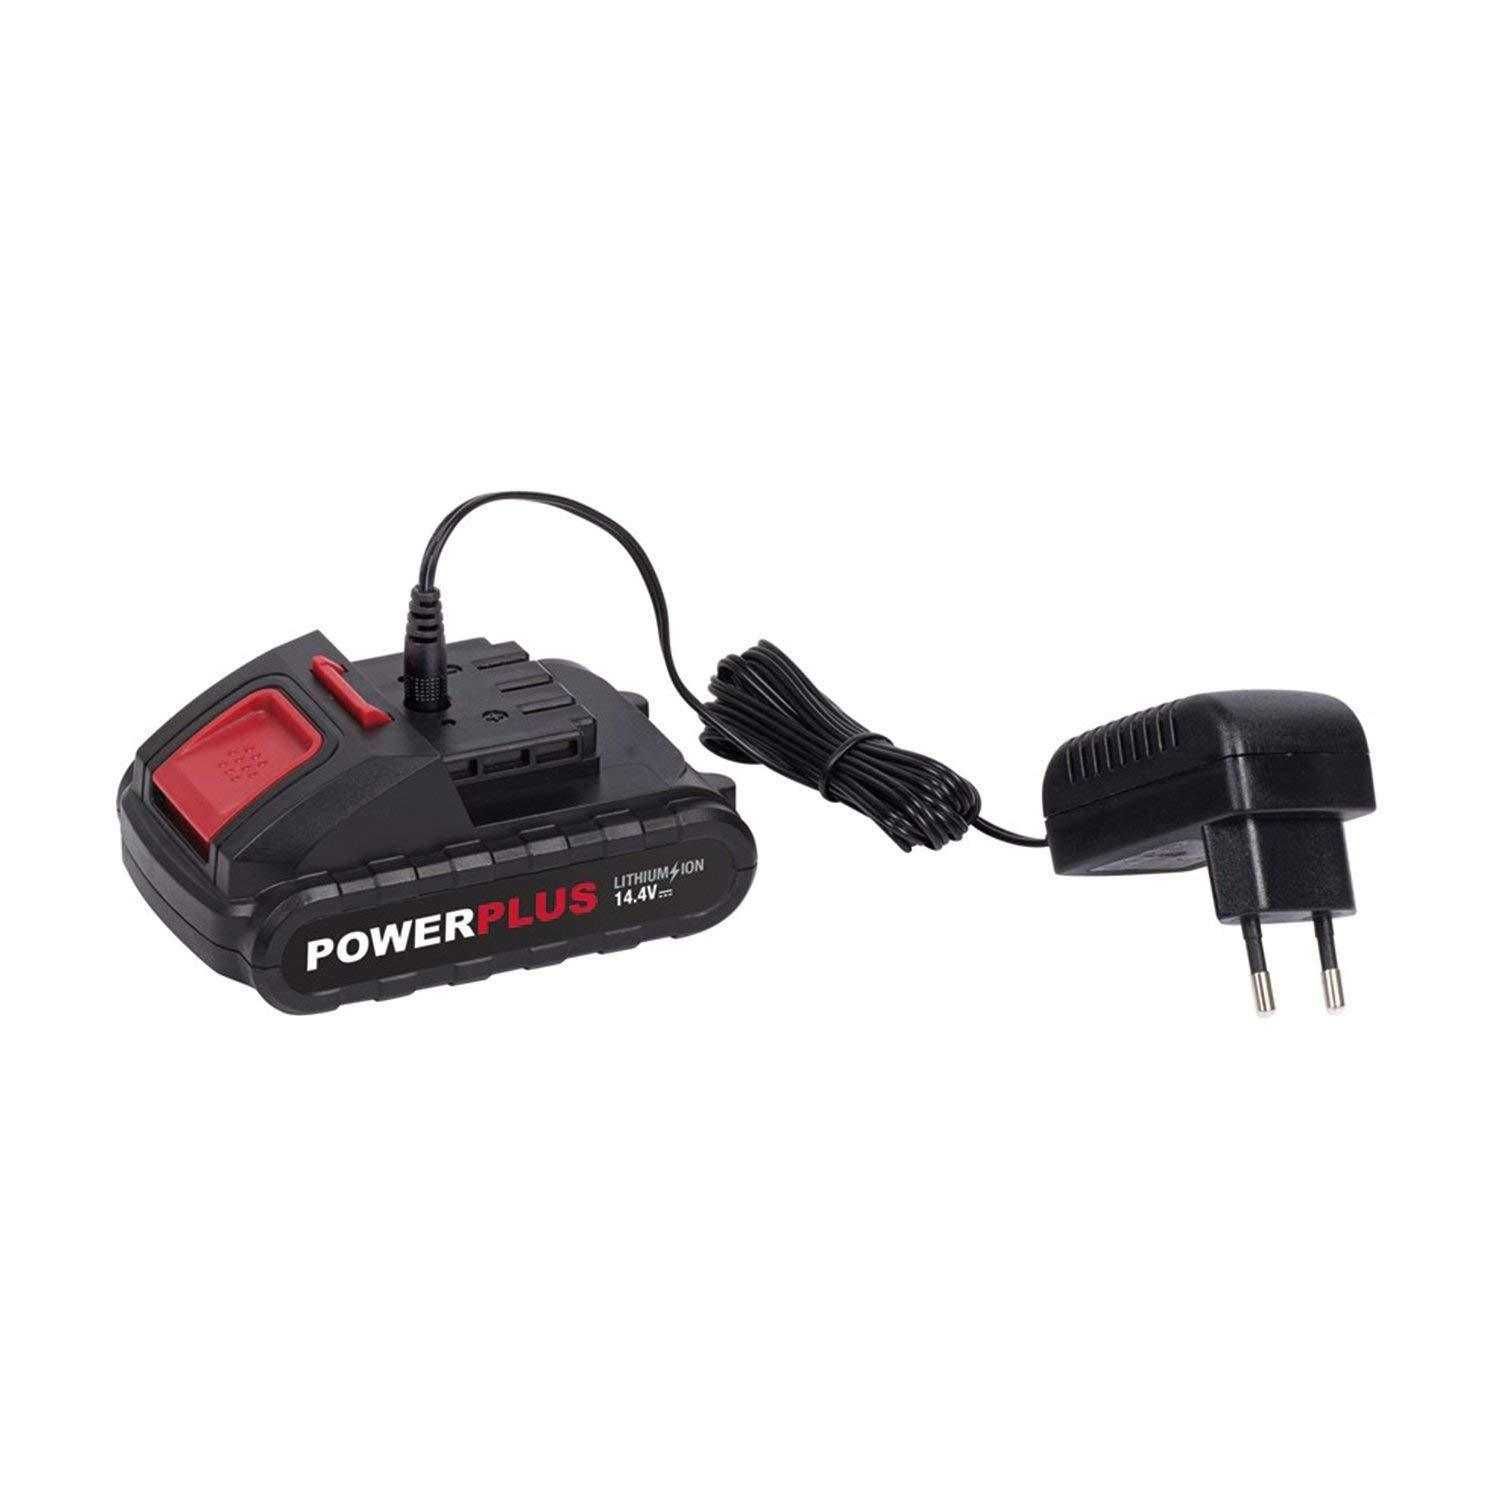 Berbequim/aparafusadora s/fio - PowerPlus - POWC1060 - 14.4V